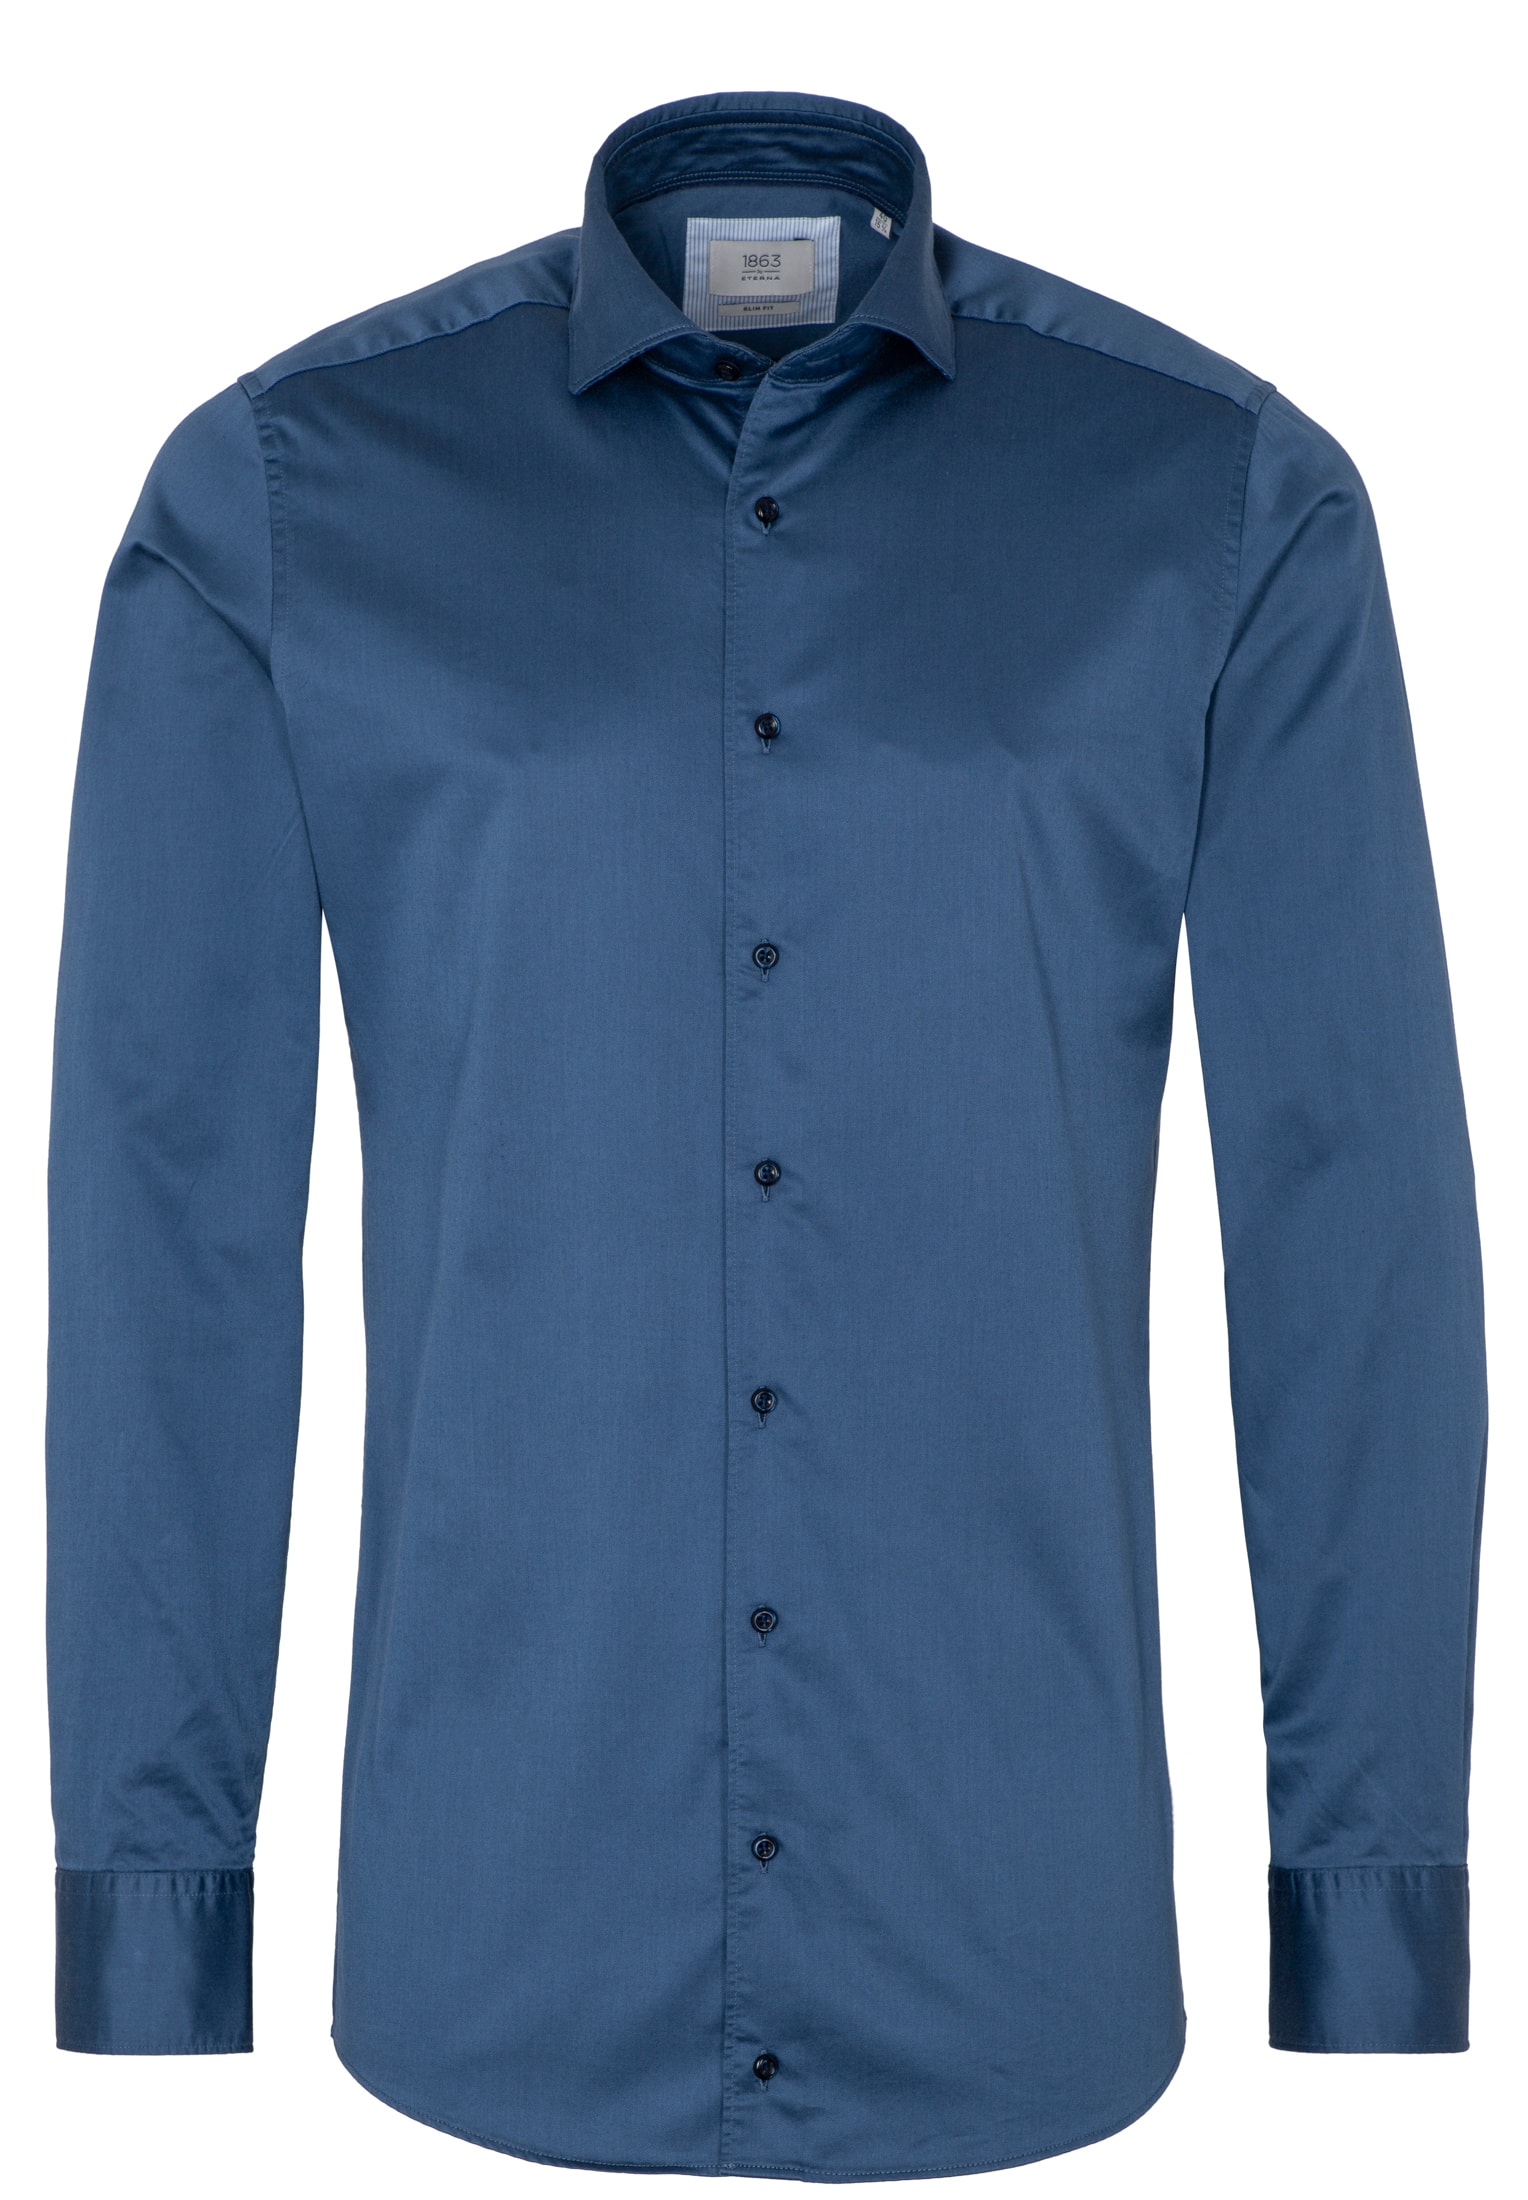 SLIM FIT Soft Luxury Shirt in blaugrau unifarben